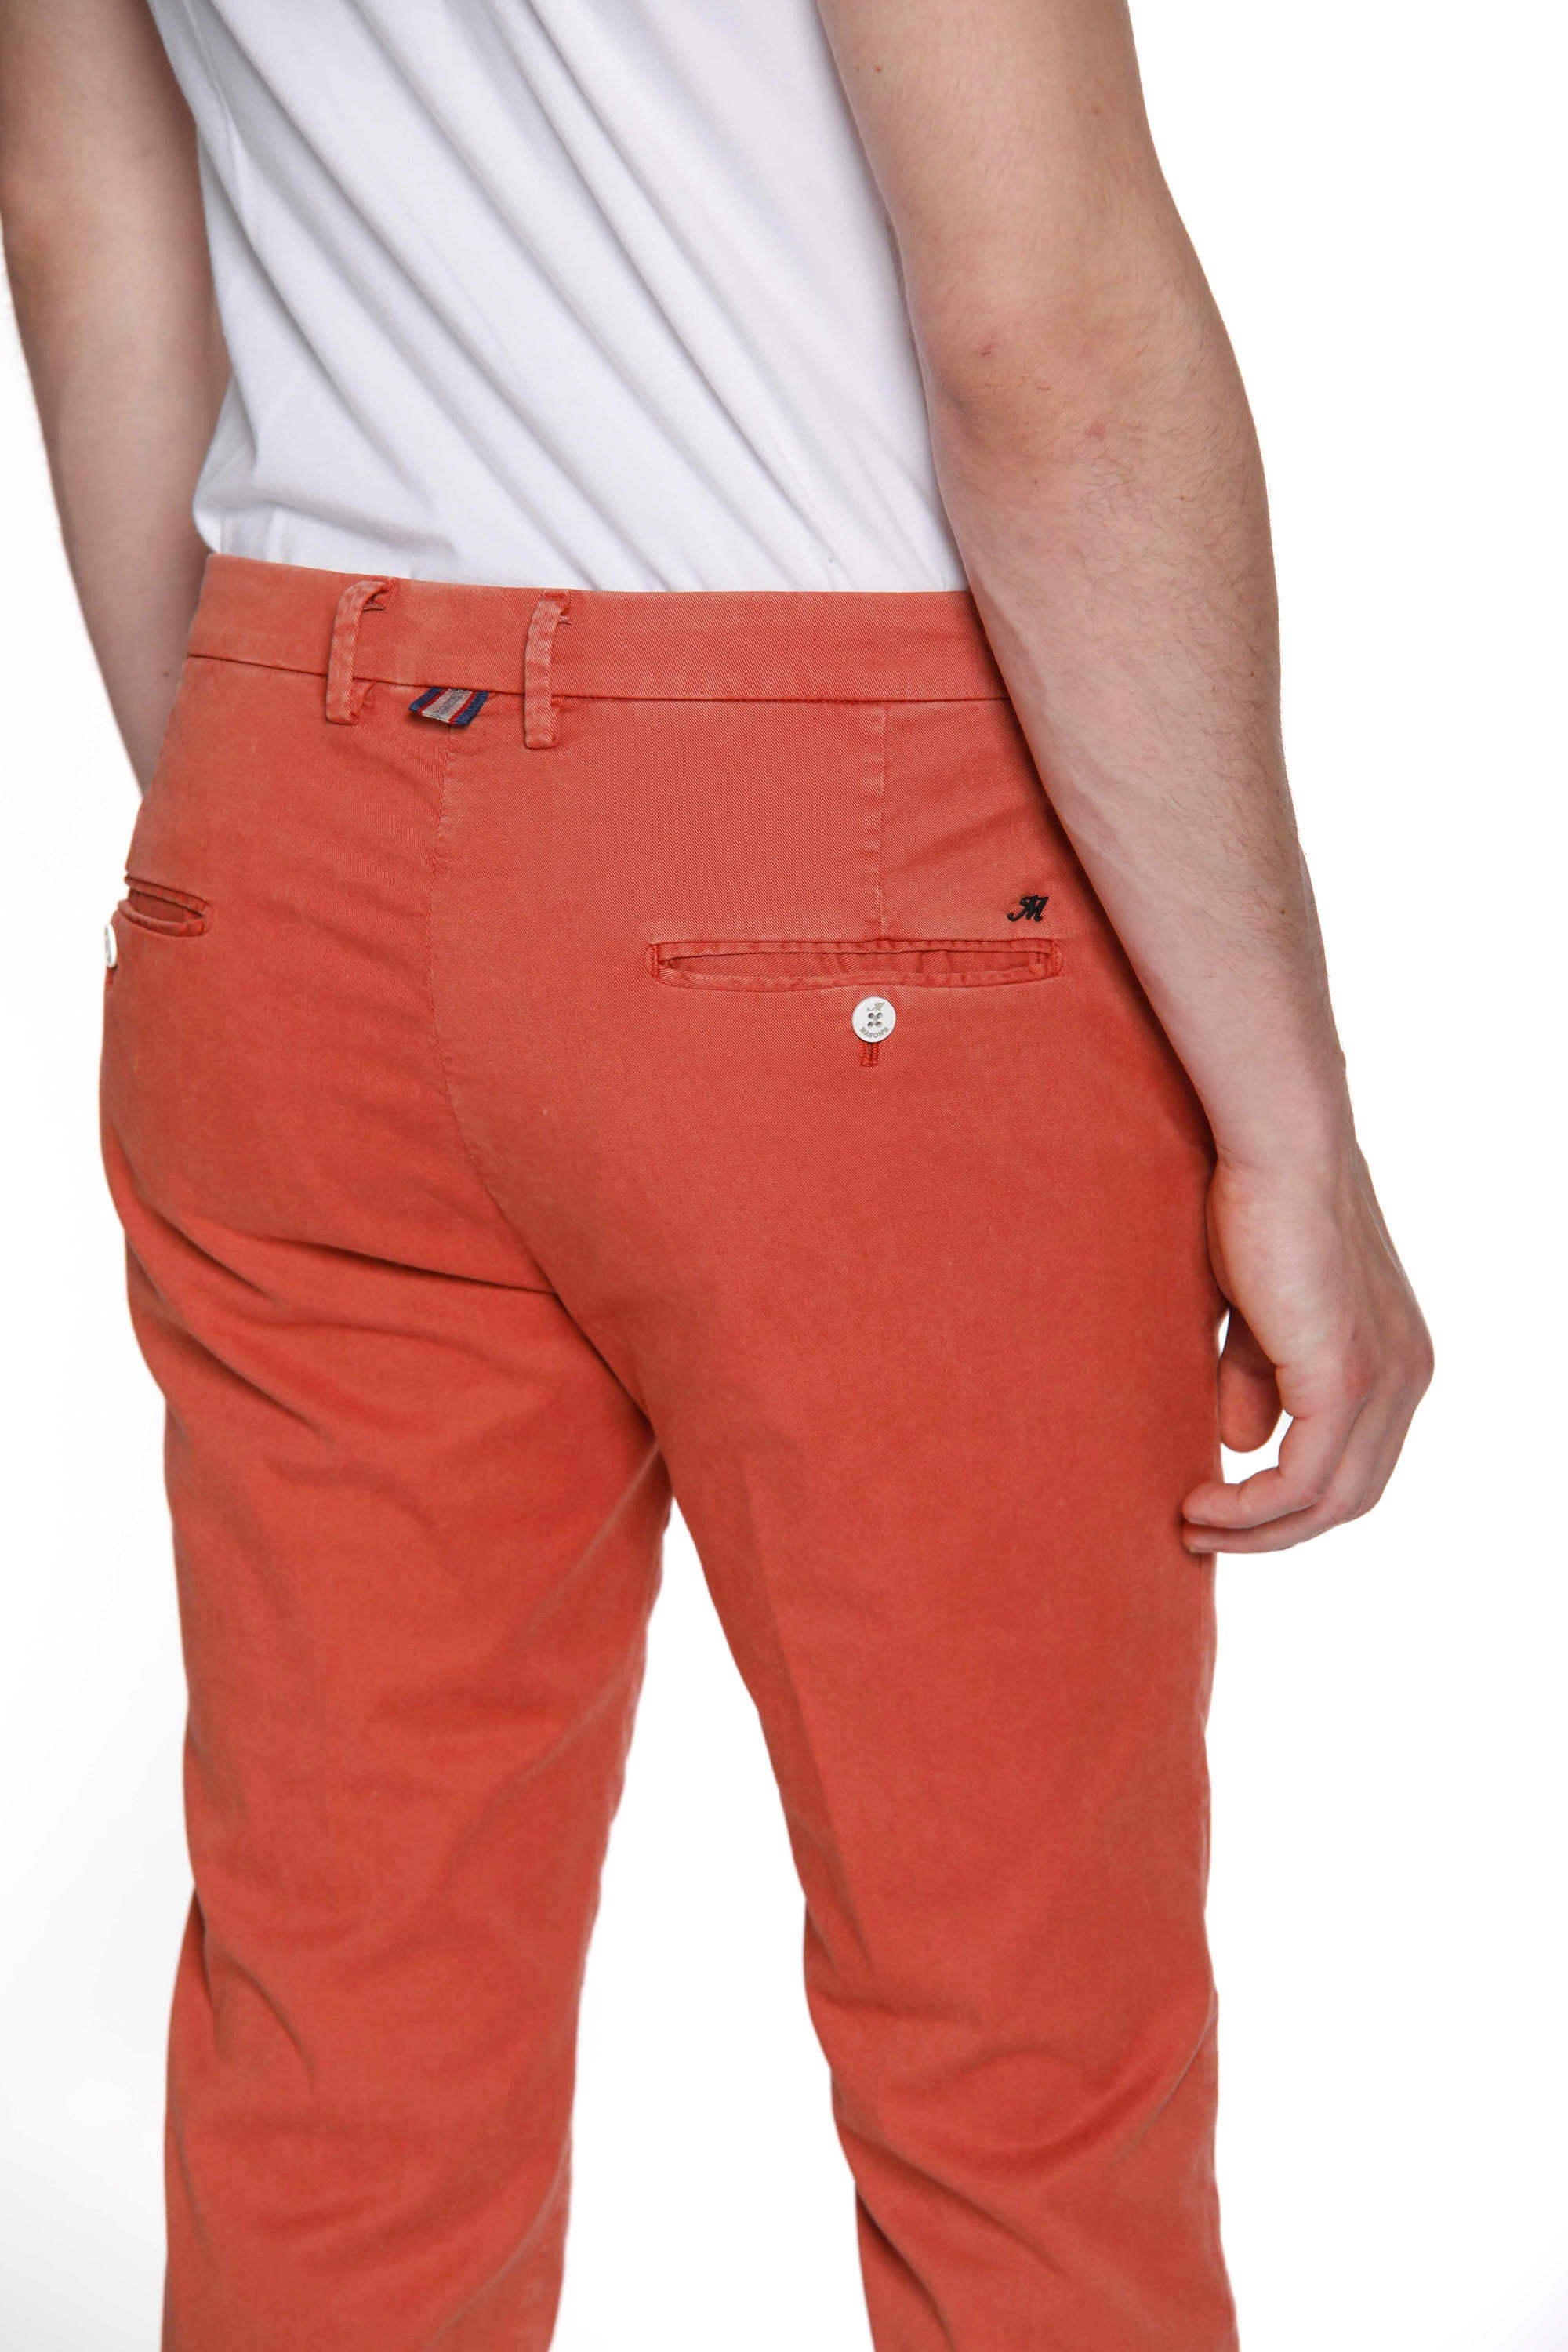 Torino Summer Color Pantalon chino homme spécial en coton slim fit